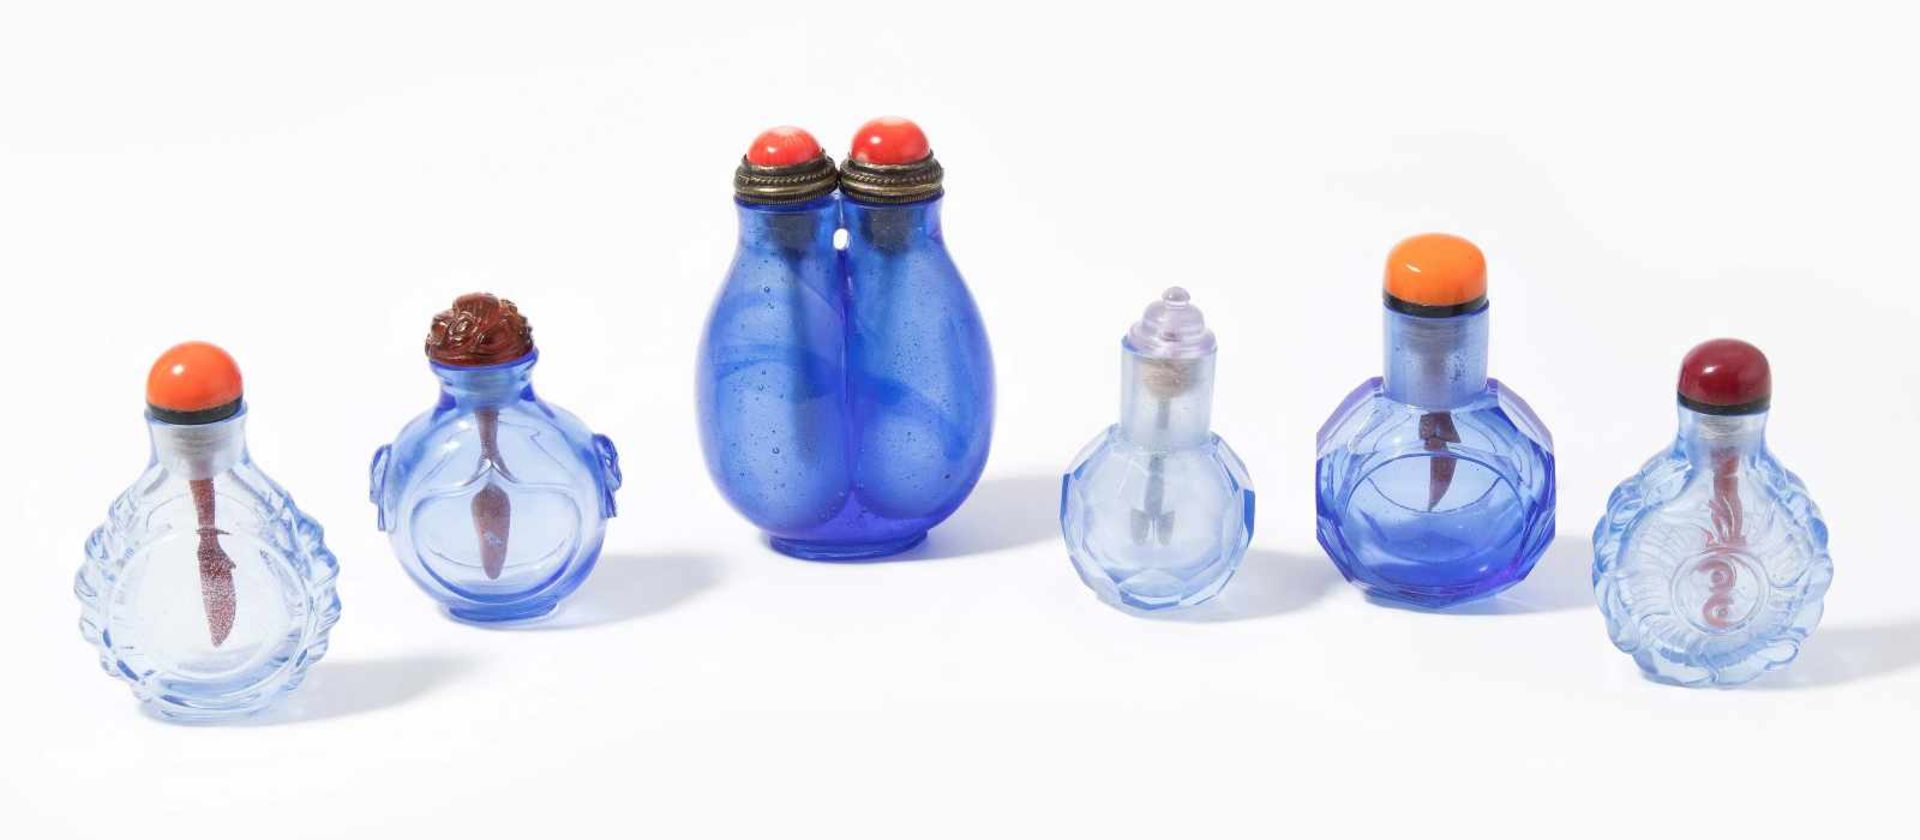 6 Glas Snuff BottlesChina. Hellblaues, transparentes Glas. Ein Doppel-Snuff Bottle, zwei mit